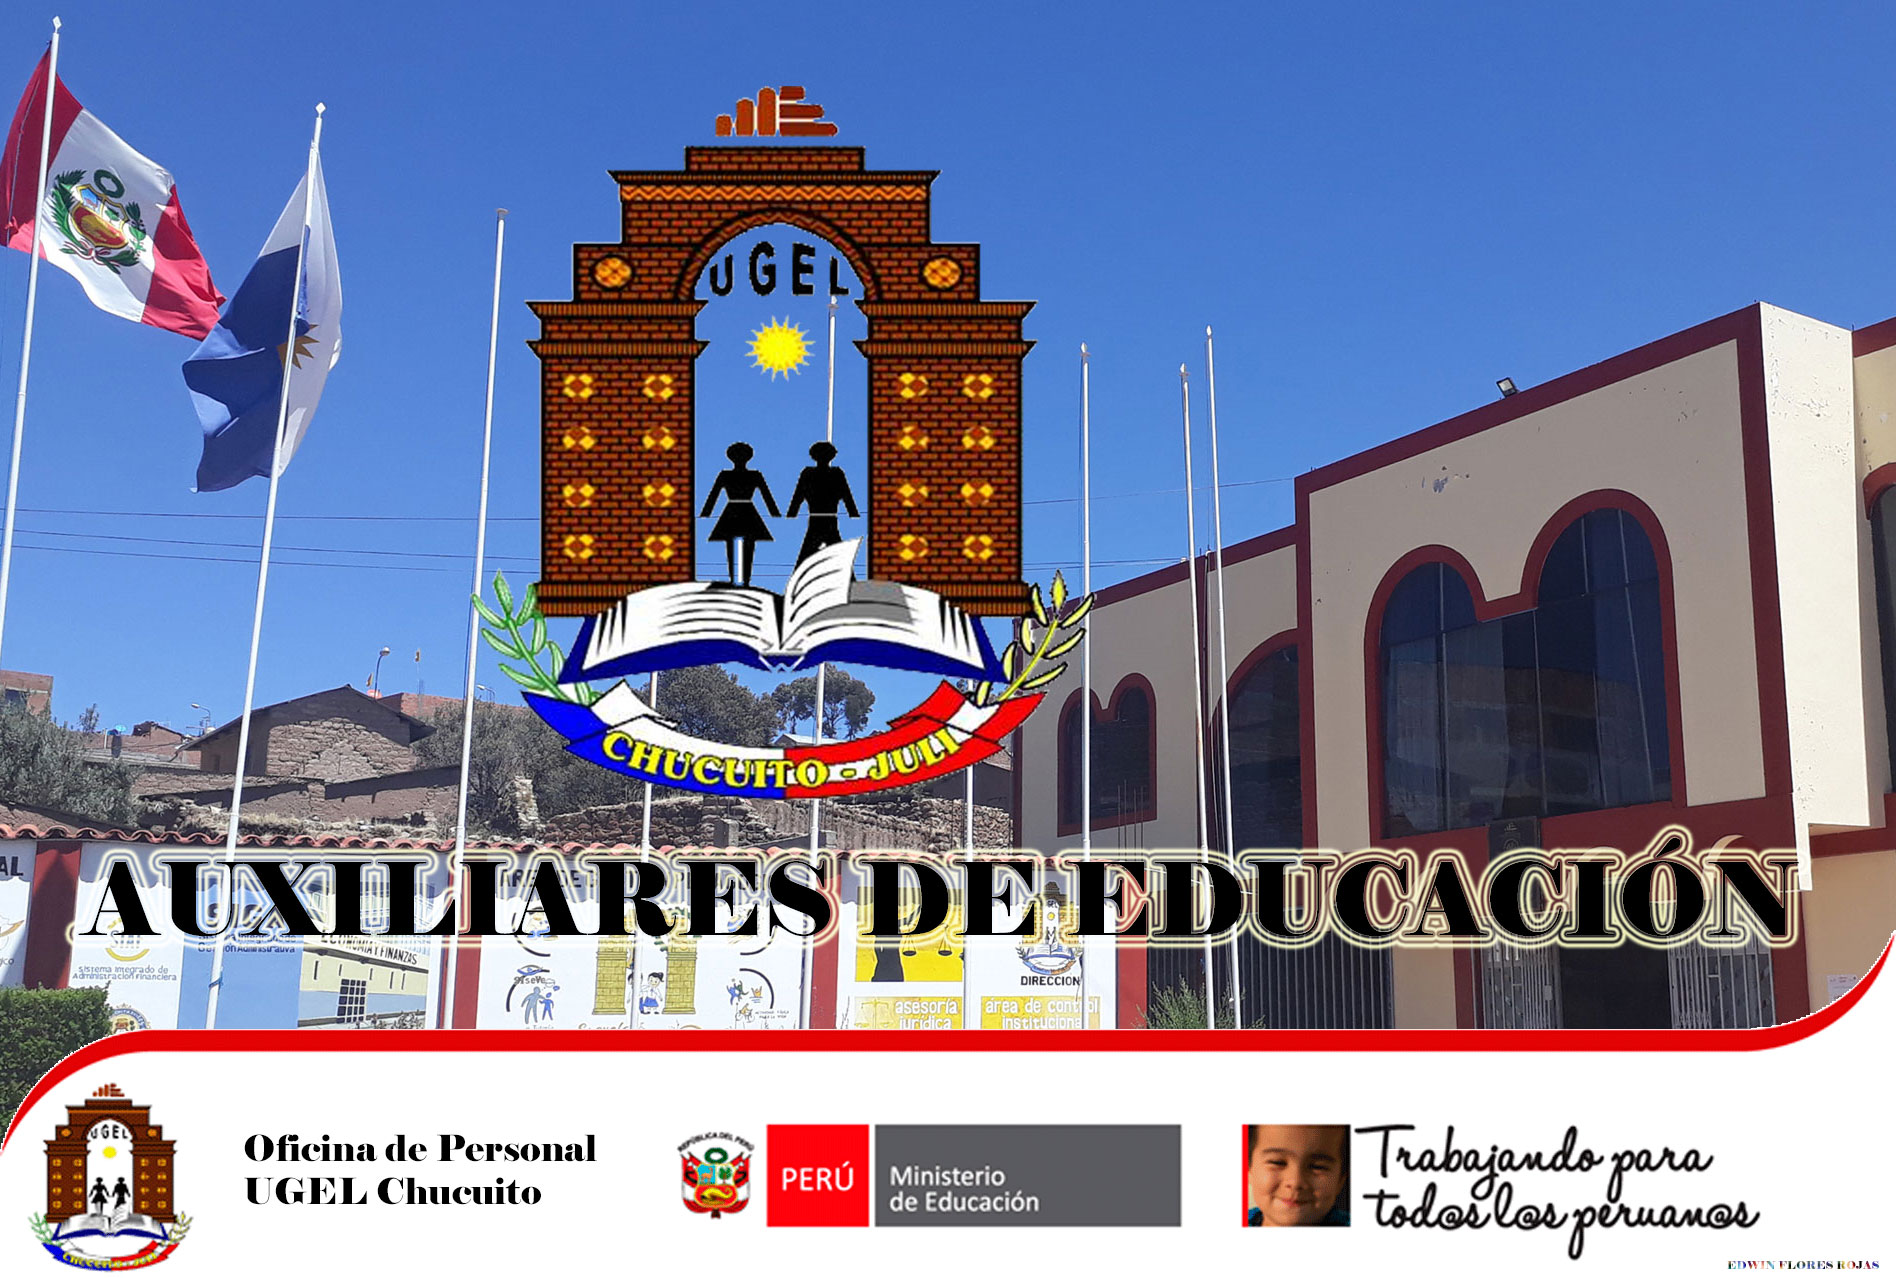 REPORTE  PRELIMINAR  DE  PLAZAS  VACANTES  DE AUXILIAR DE EDUCACION  PARA  PROCESO  DE  CONTRATO  2021